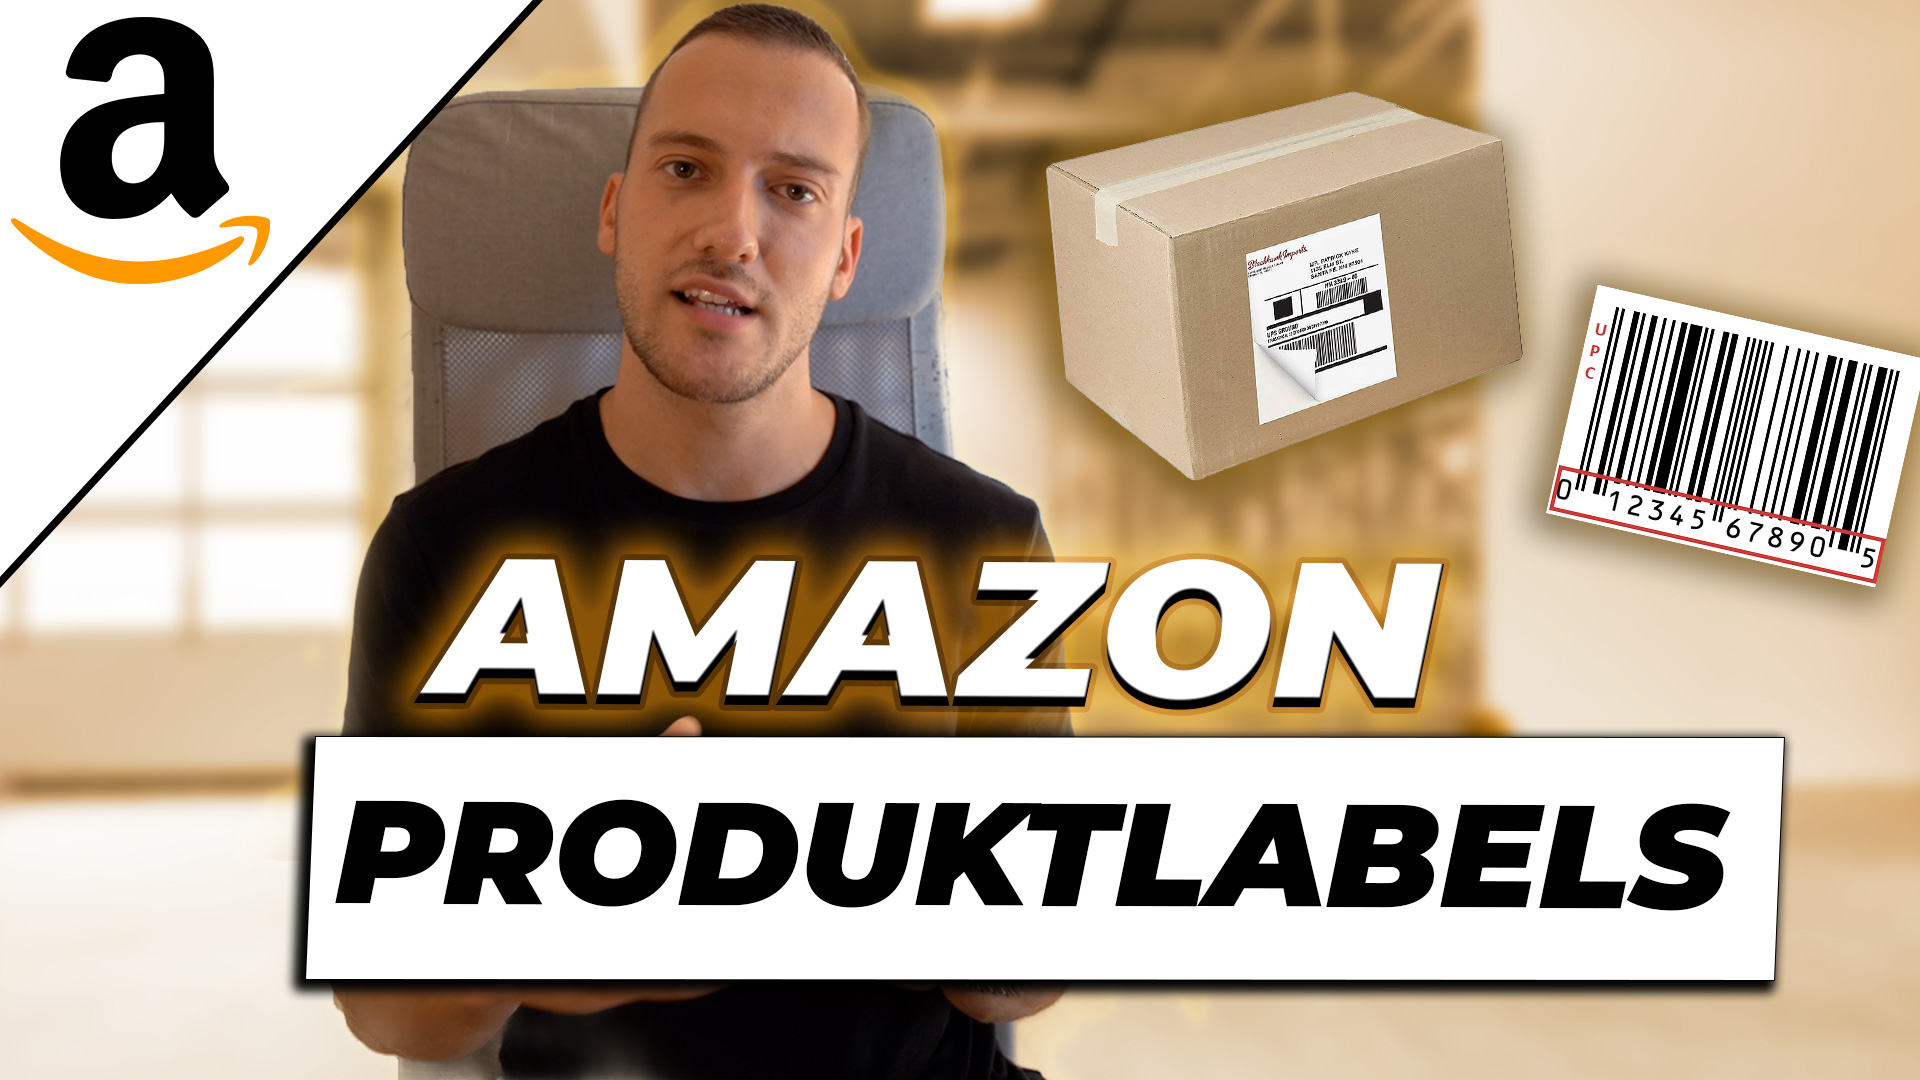 Welche Amazon Produktlabels gibt es?